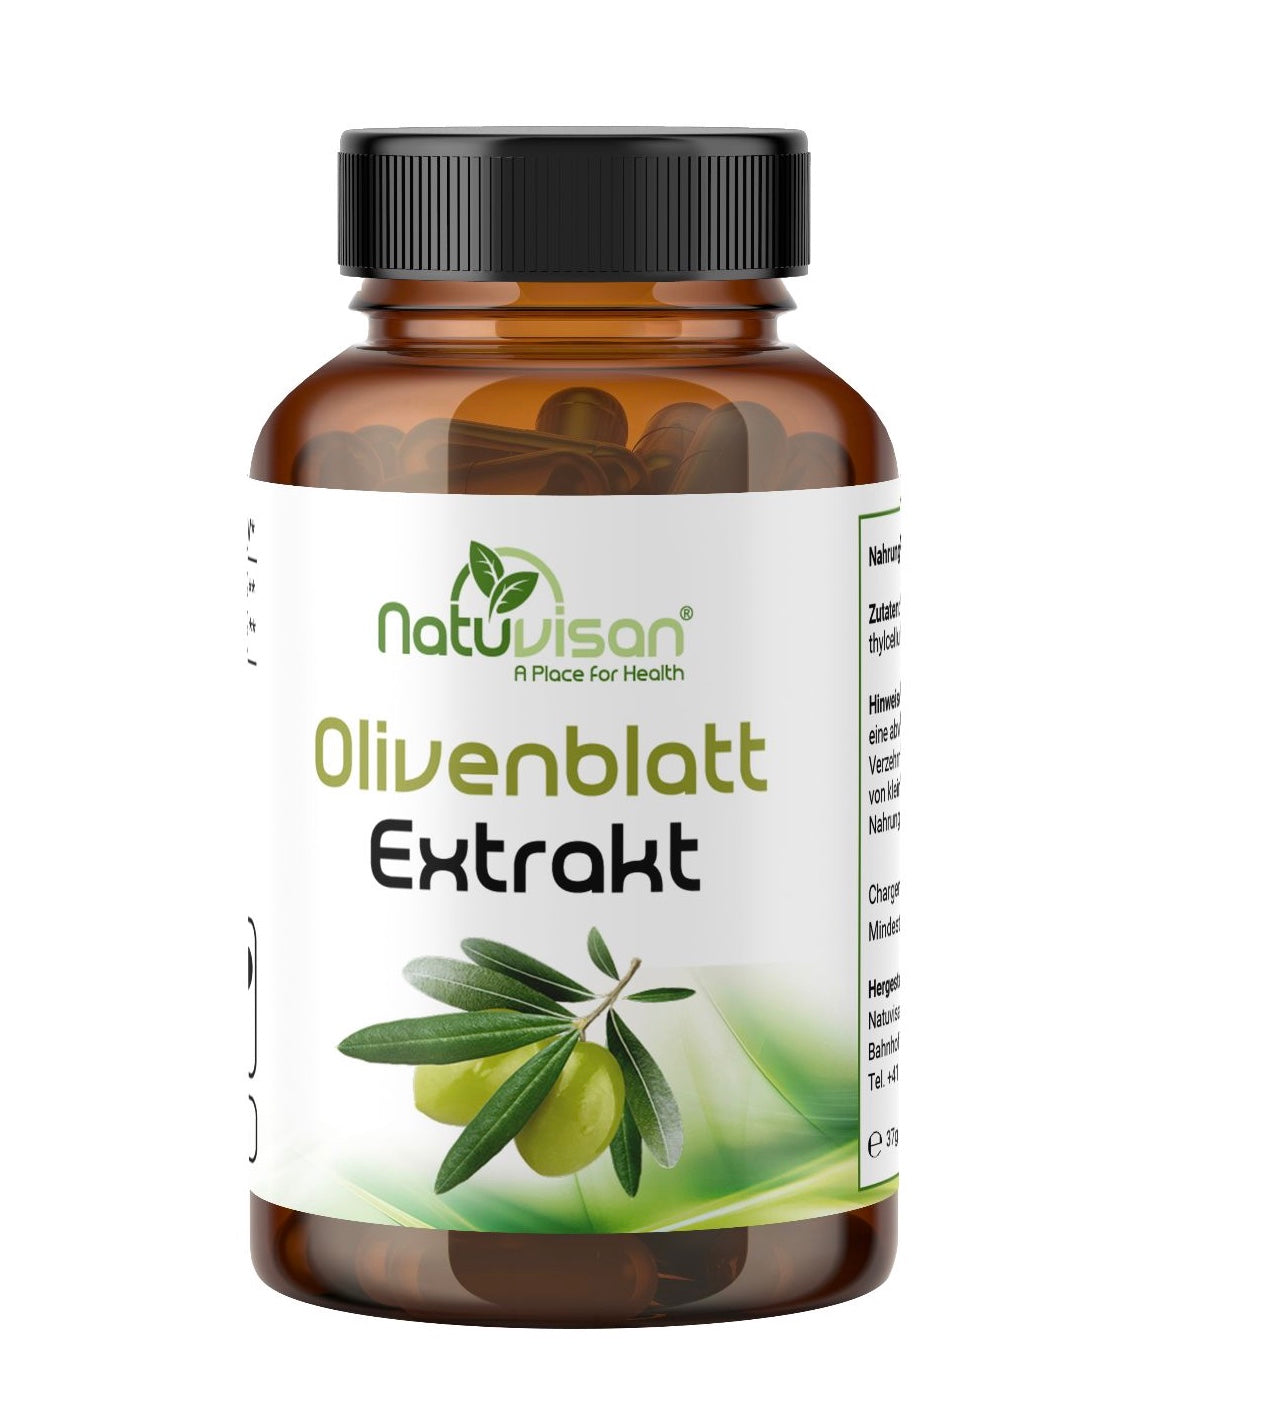 Olivenblatt Extrakt 500 mg - 20% Oleuropein - antiparasitär - 60 Kapseln